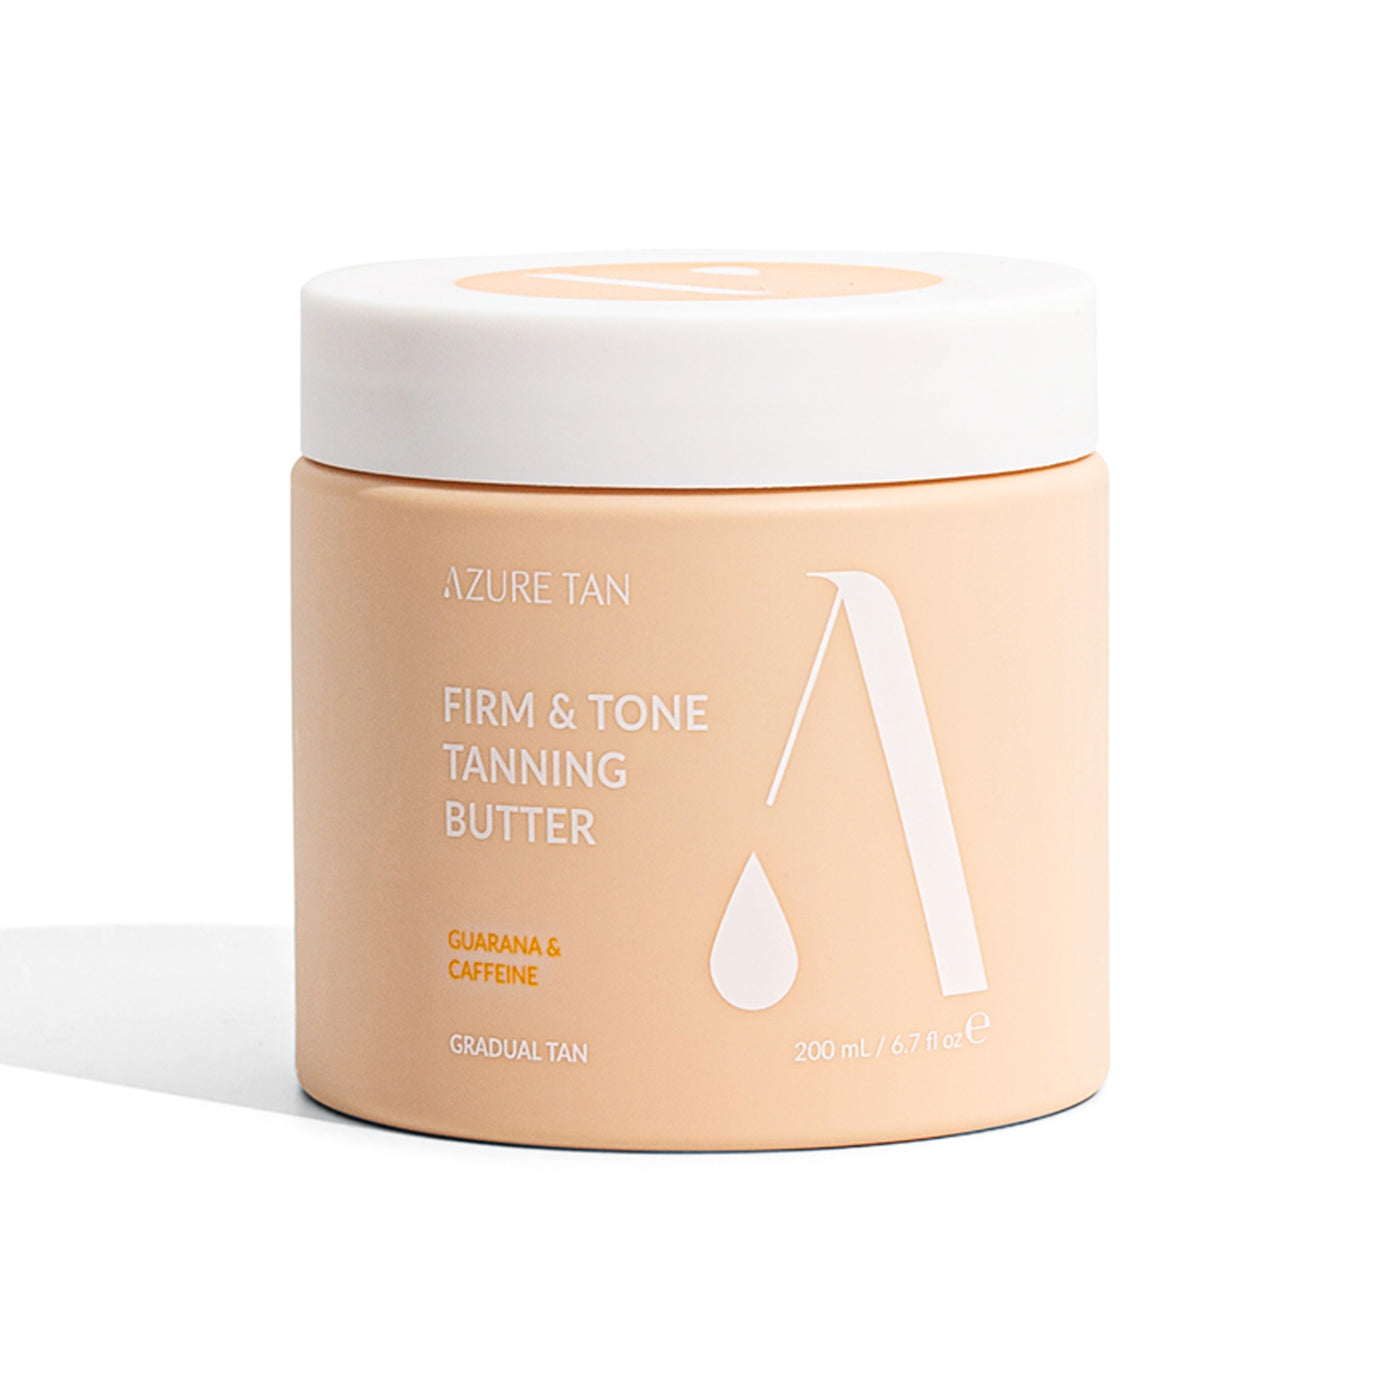 Azure Tan Firm & Tone Tanning Butter (200ml)